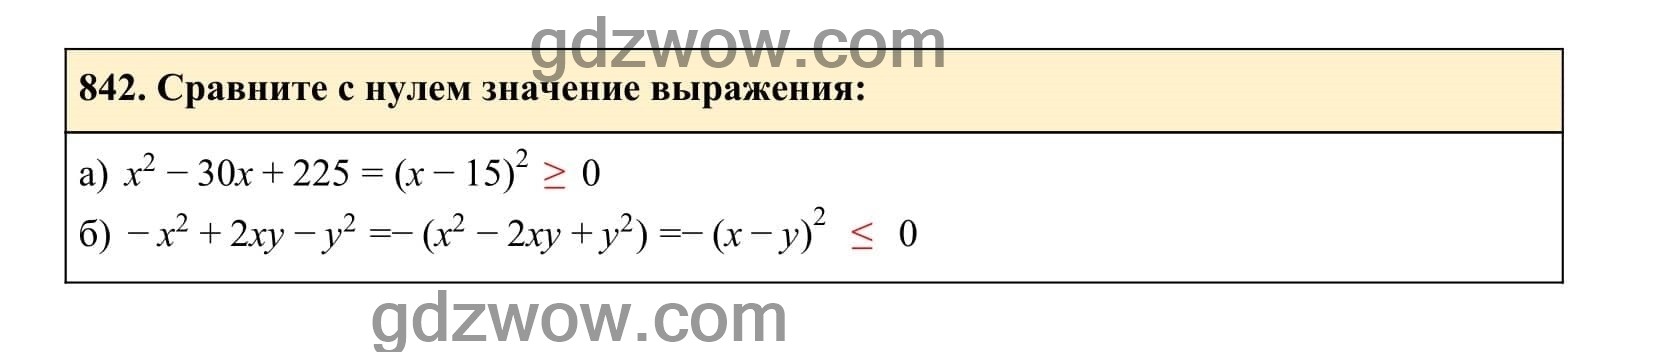 Упражнение 842 - ГДЗ по Алгебре 7 класс Учебник Макарычев (решебник) - GDZwow